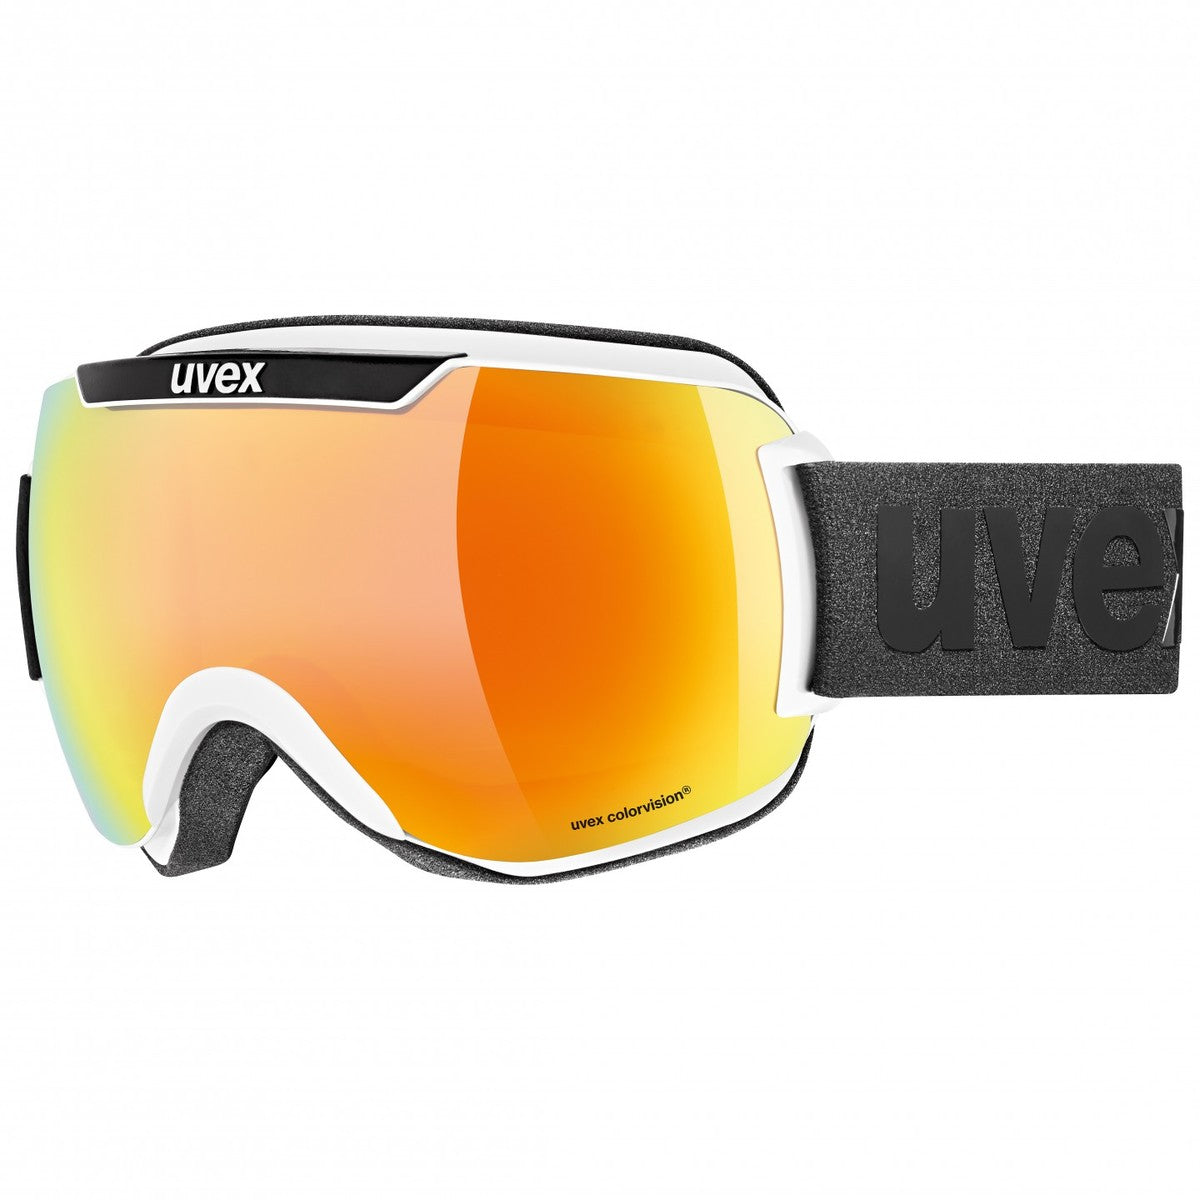 Uvex Downhill 2000 CV skibril wit/zwart